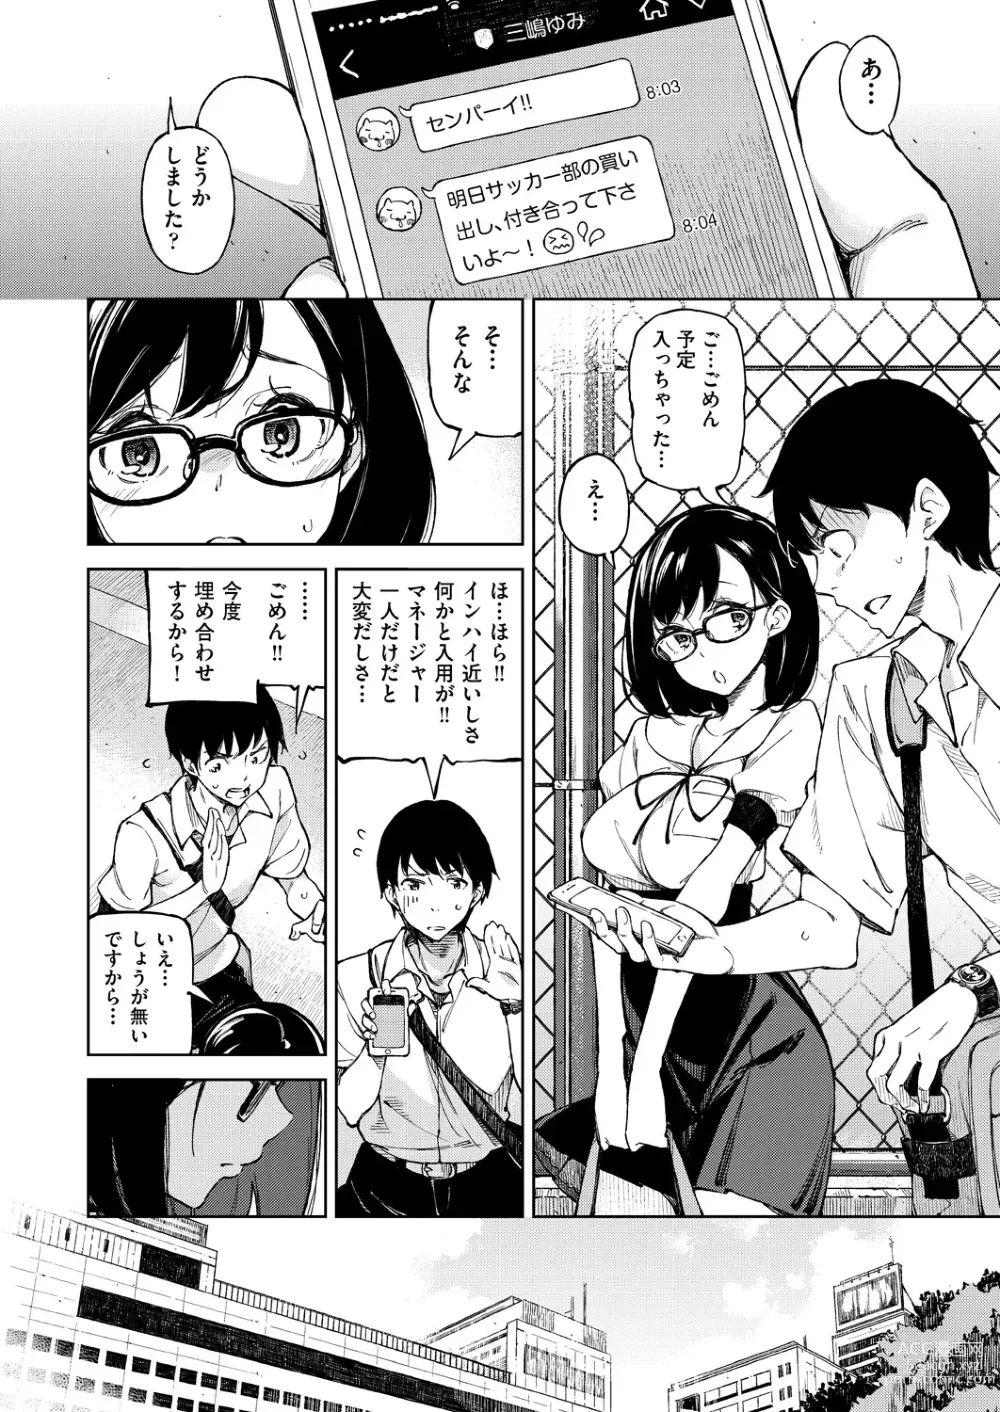 Page 9 of manga Koiwazurai